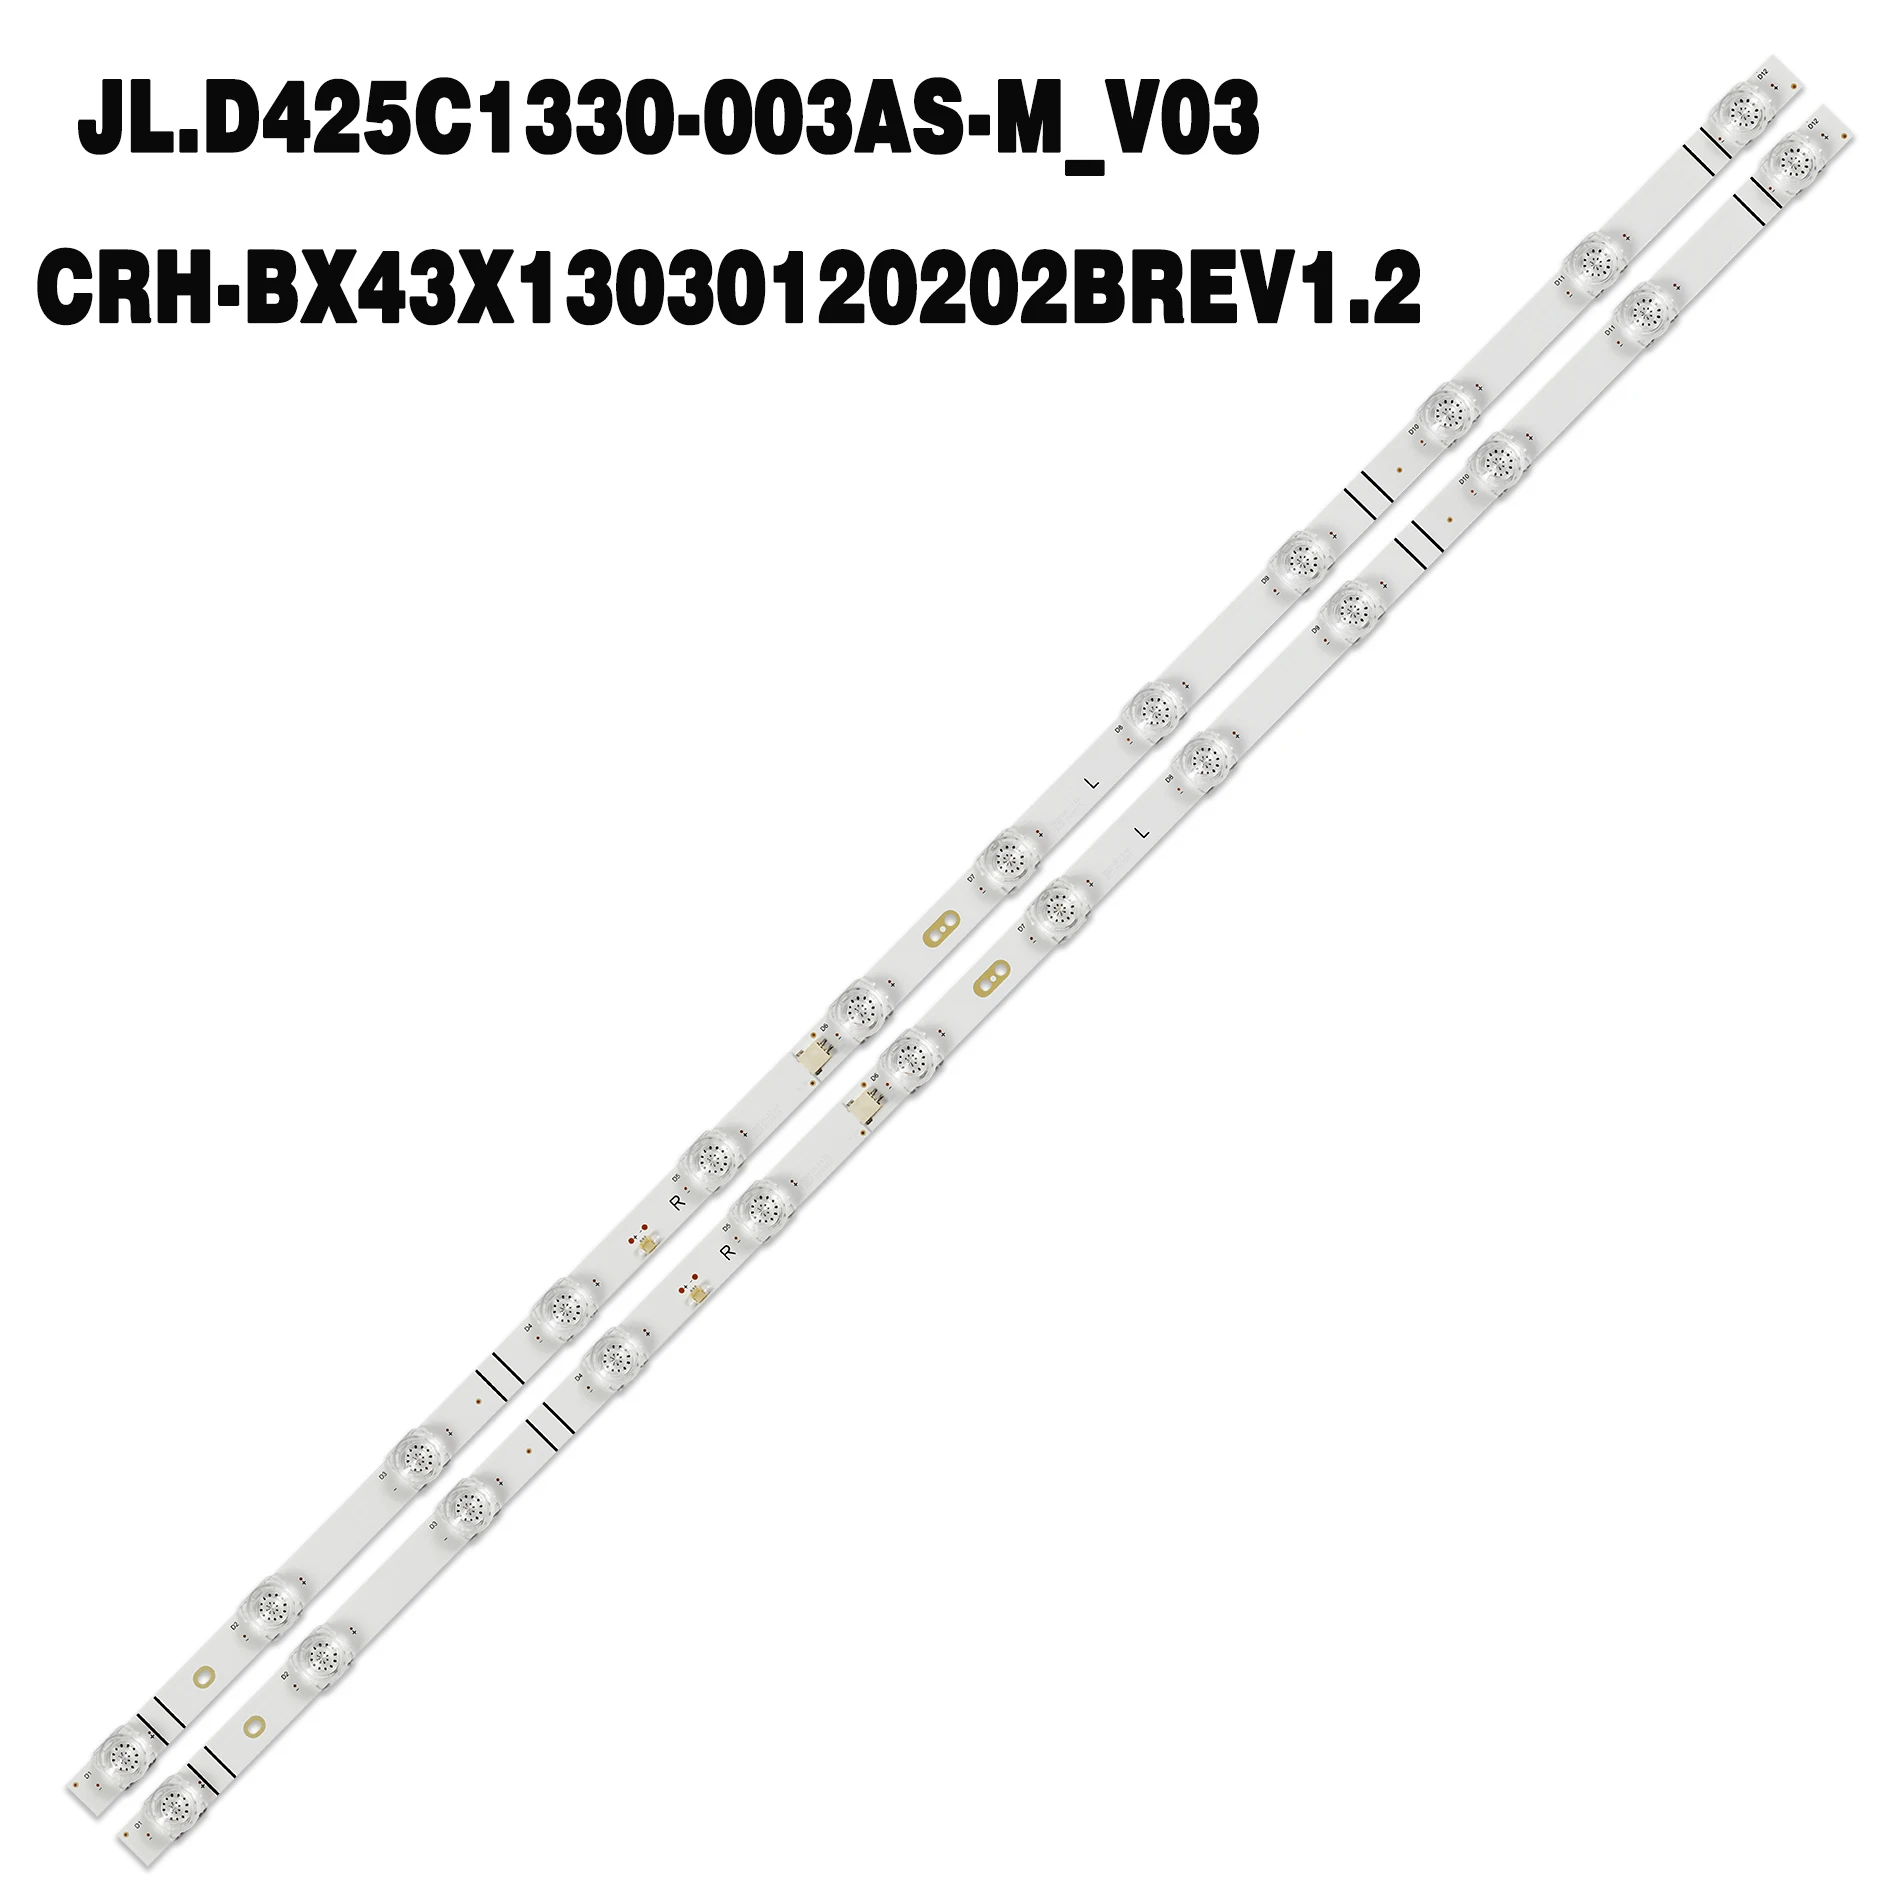 

10PCS 20PCS LED Backlight strip 12lamp CRH-BX43X13030120202BREV1.2 JL.D425C1330-003AS-M_V03 for Hisense 43h4000gm 43h4030f3